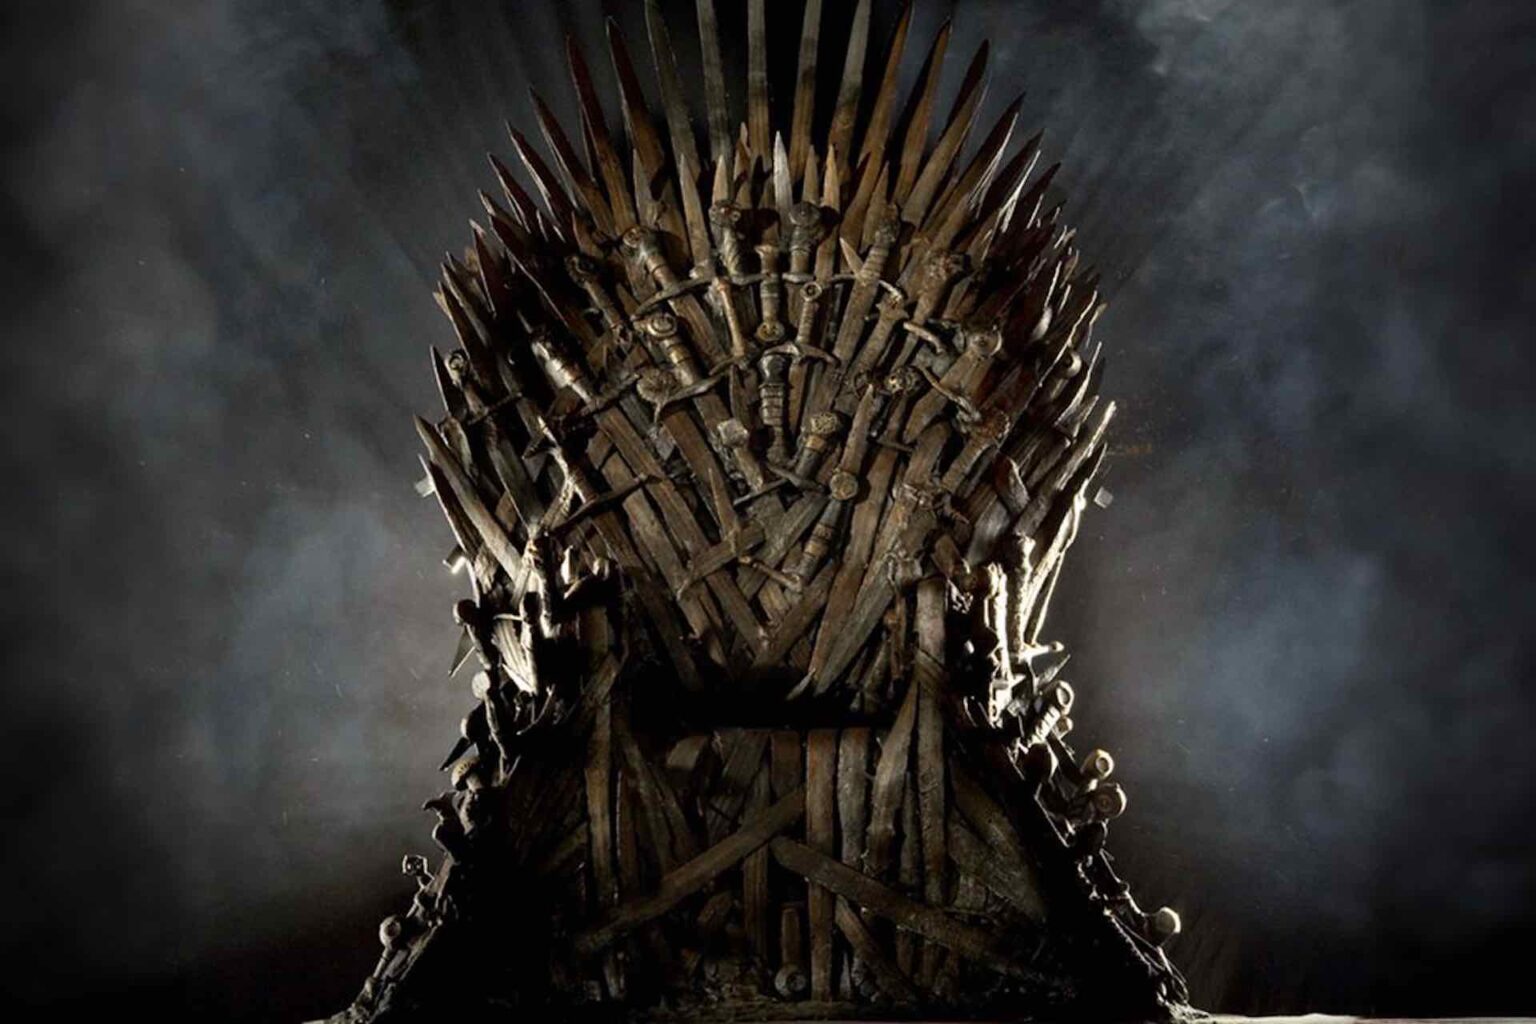 El universo de 'Game of Thrones' sigue expandiéndose. Entérate de cuál será la nueva precuela de HBO.